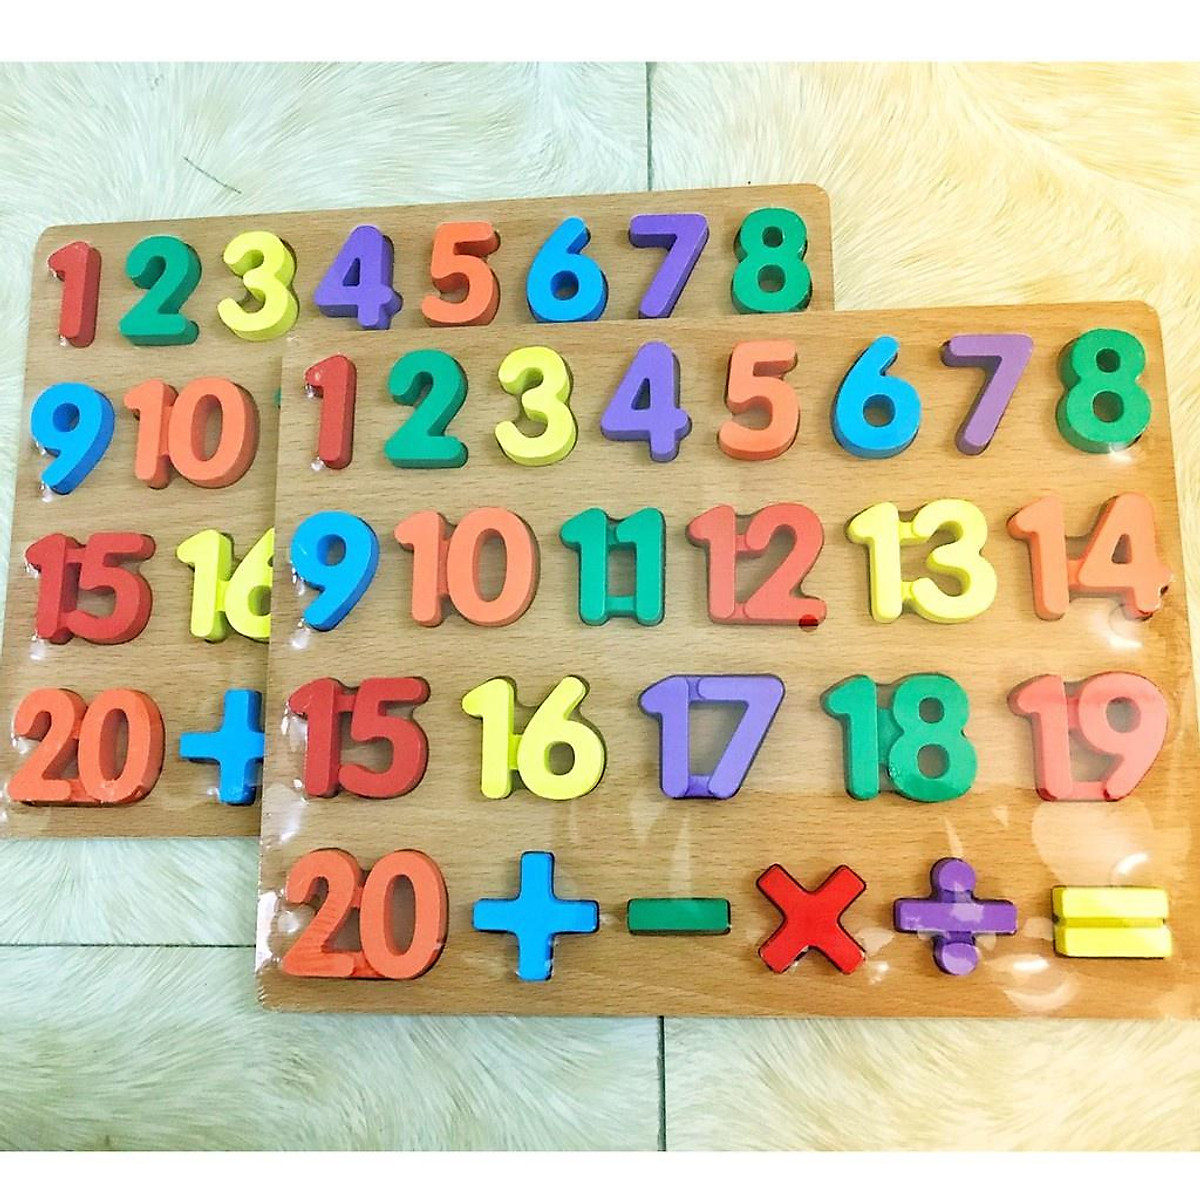 Đồ chơi bảng gỗ nổi chữ số 1-20 và phép tính cho bé - bảng số